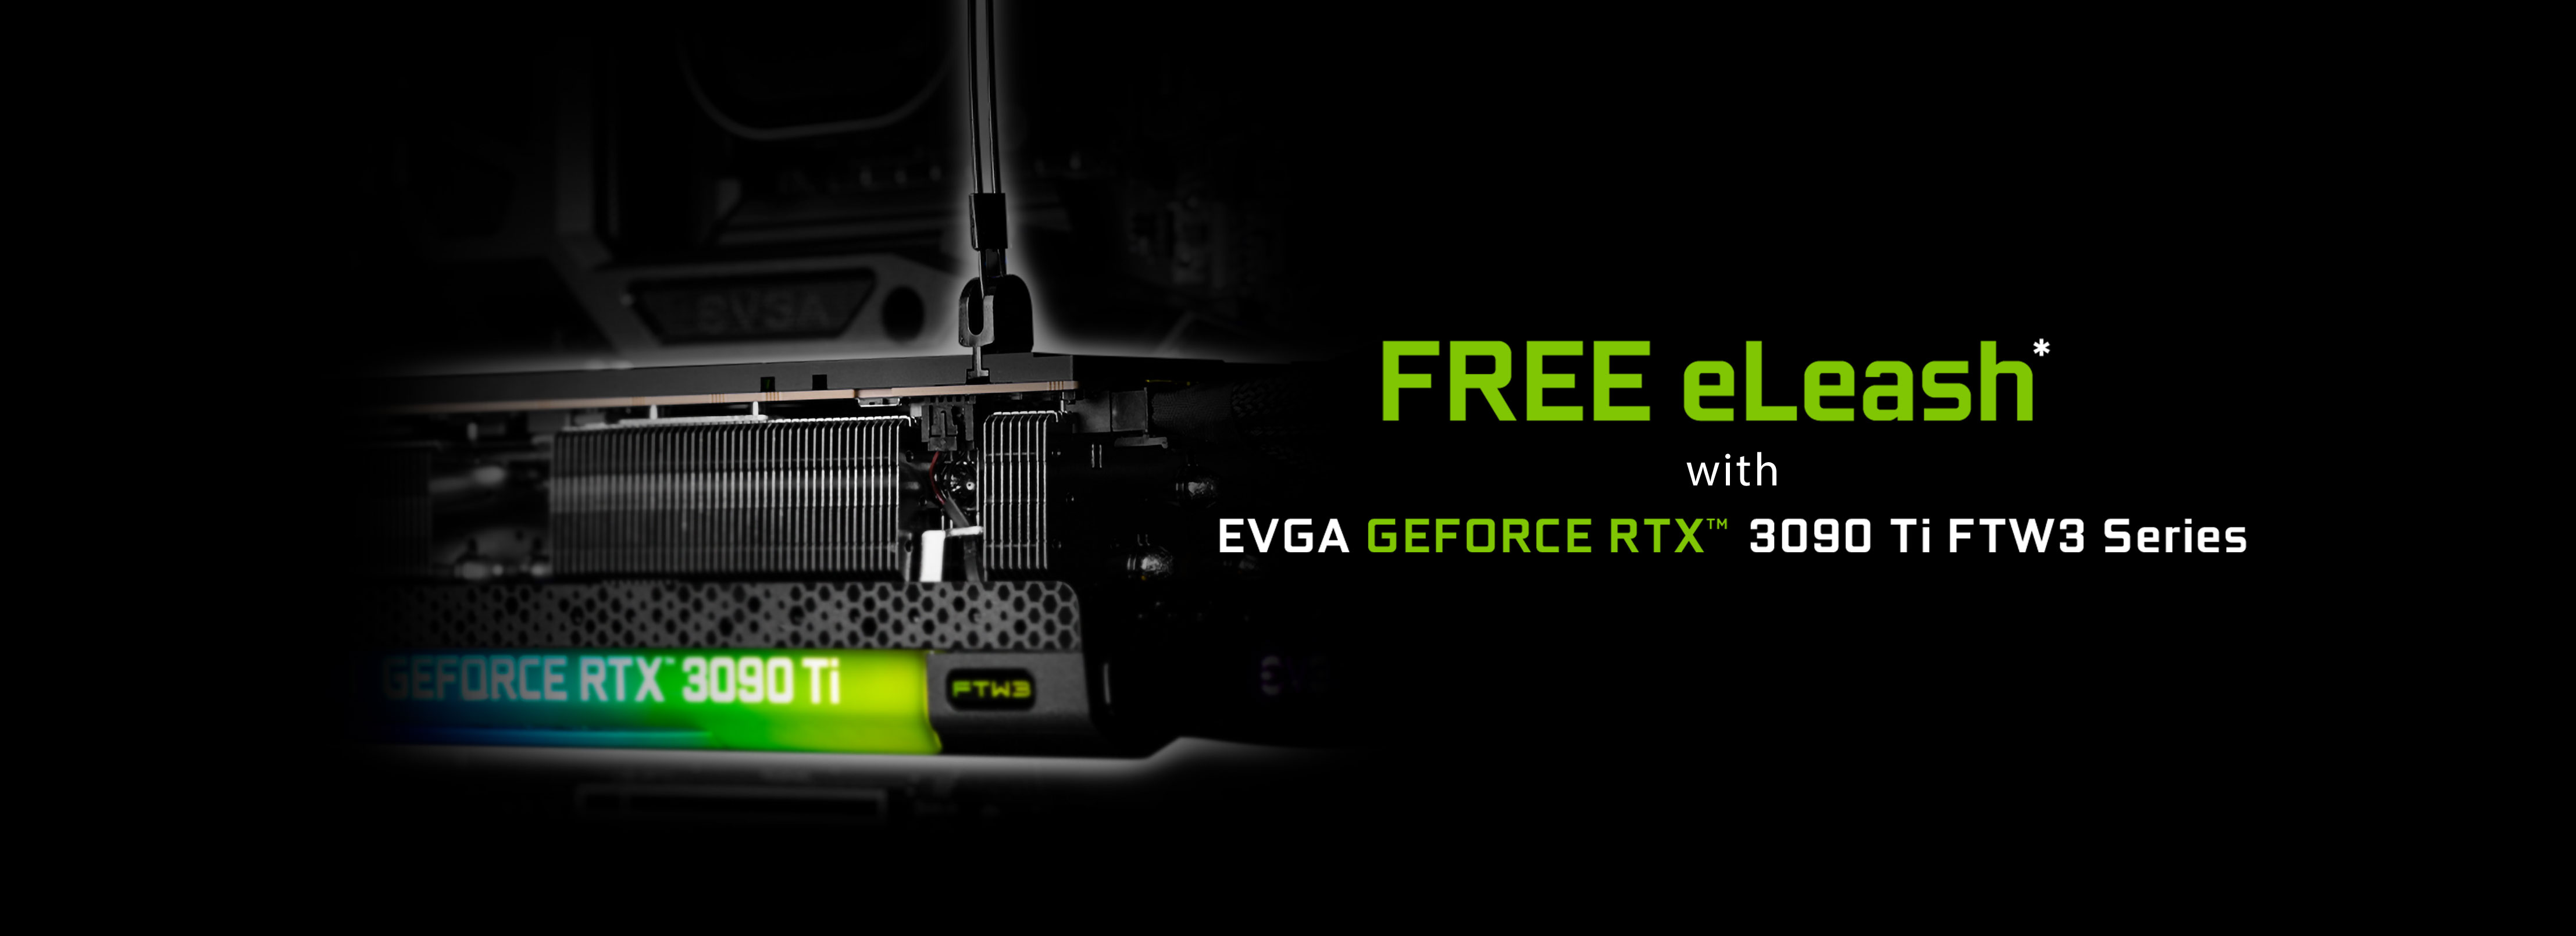 FREE eLeash™ with EVGA GeForce RTX 3090 Ti FTW3 Series